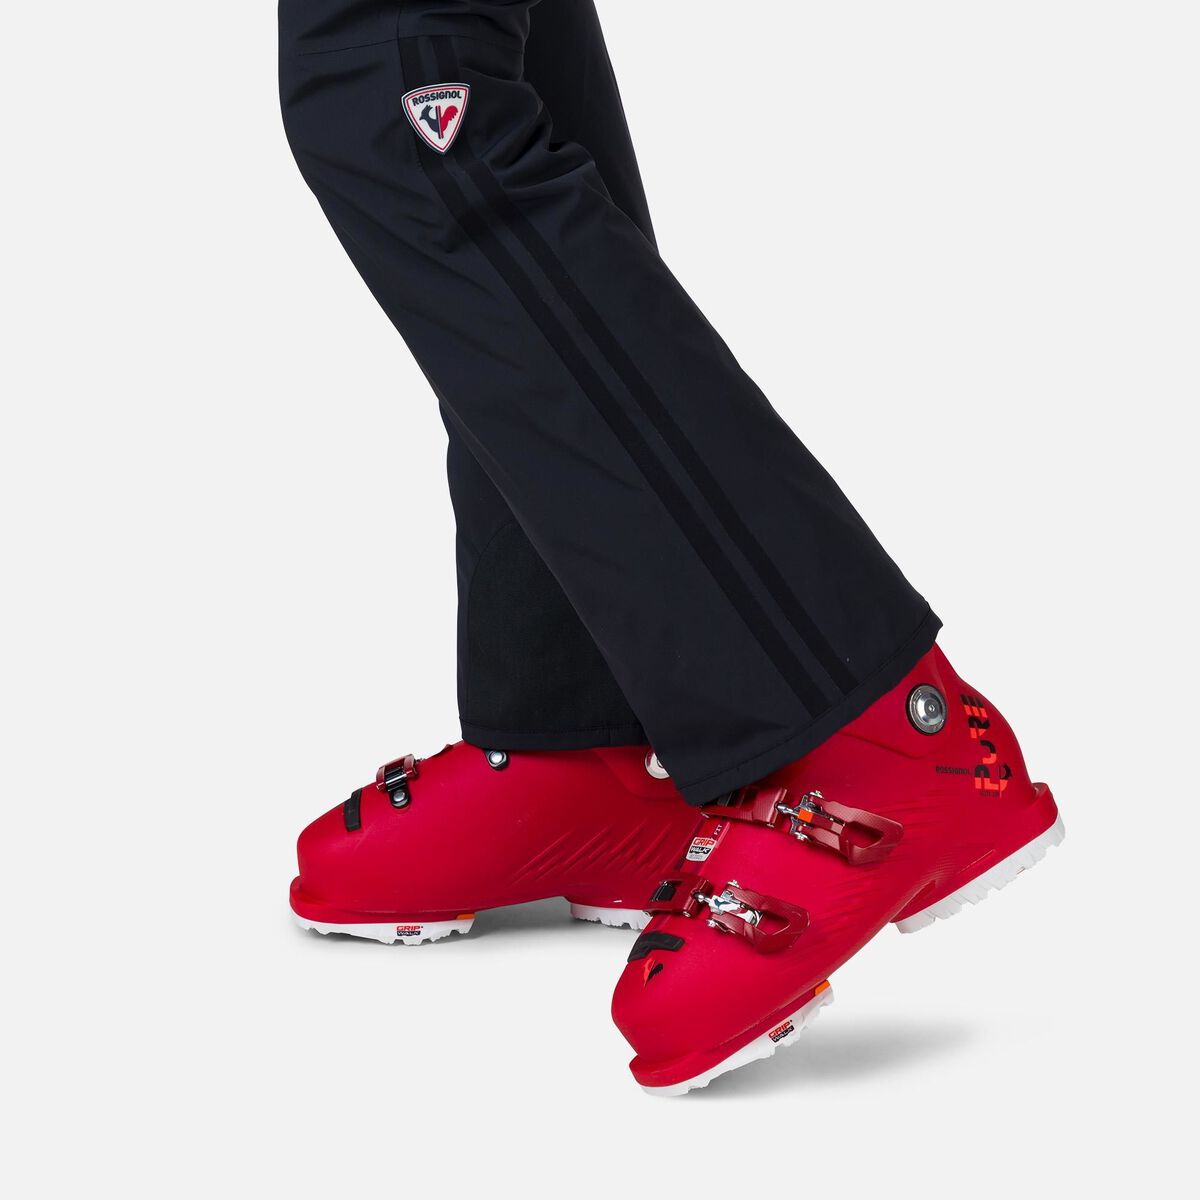 Pantalones de esquí Strato para mujer